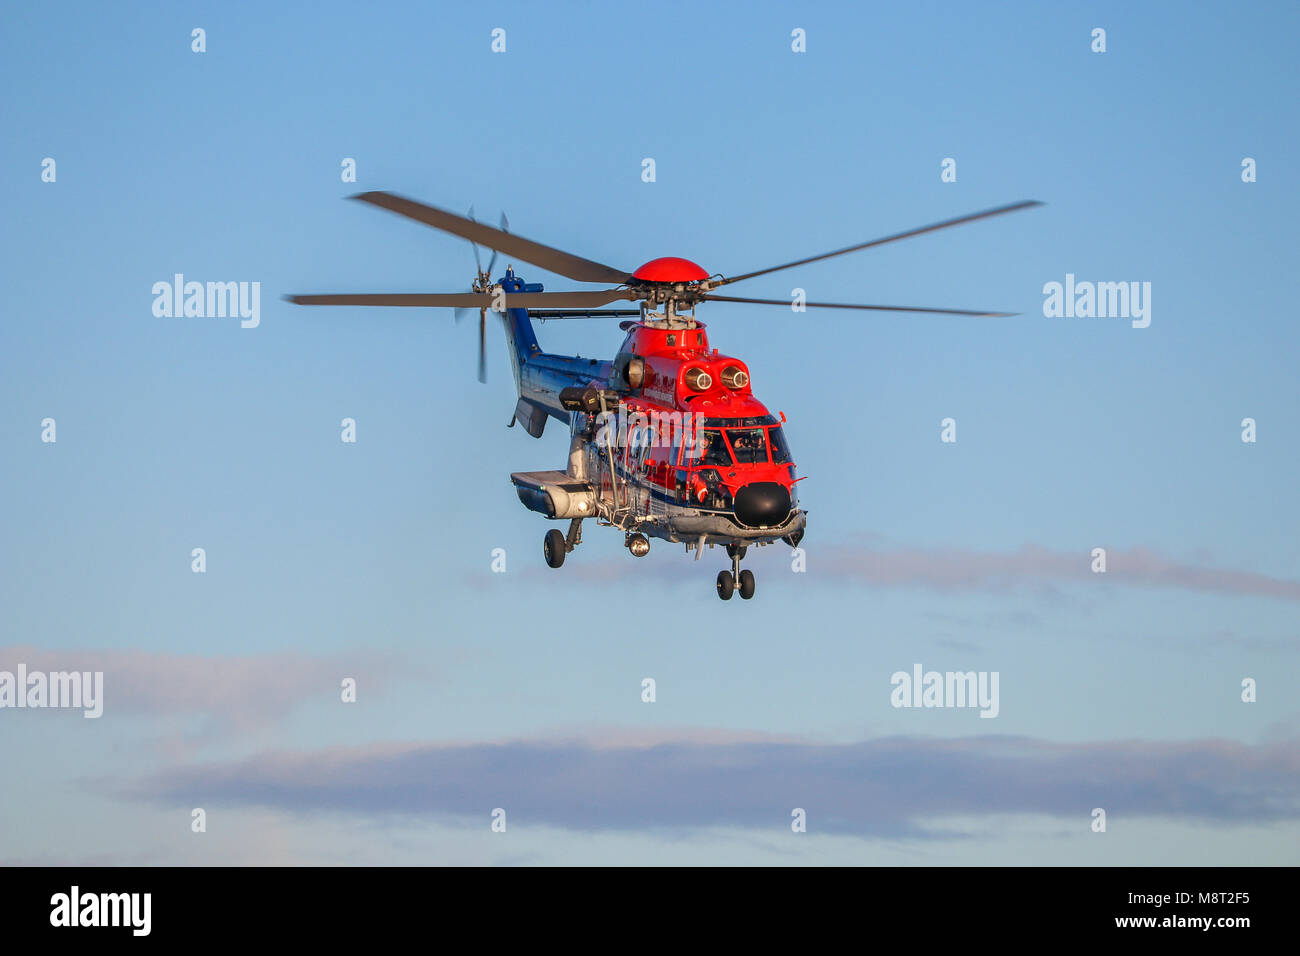 ALESUND, Norvegia - 24 ottobre 2017: Airbus A332 Super Puma Salvataggio in elicottero in aria. Azionato da CHC helikopter servizio in Norvegia. Foto Stock